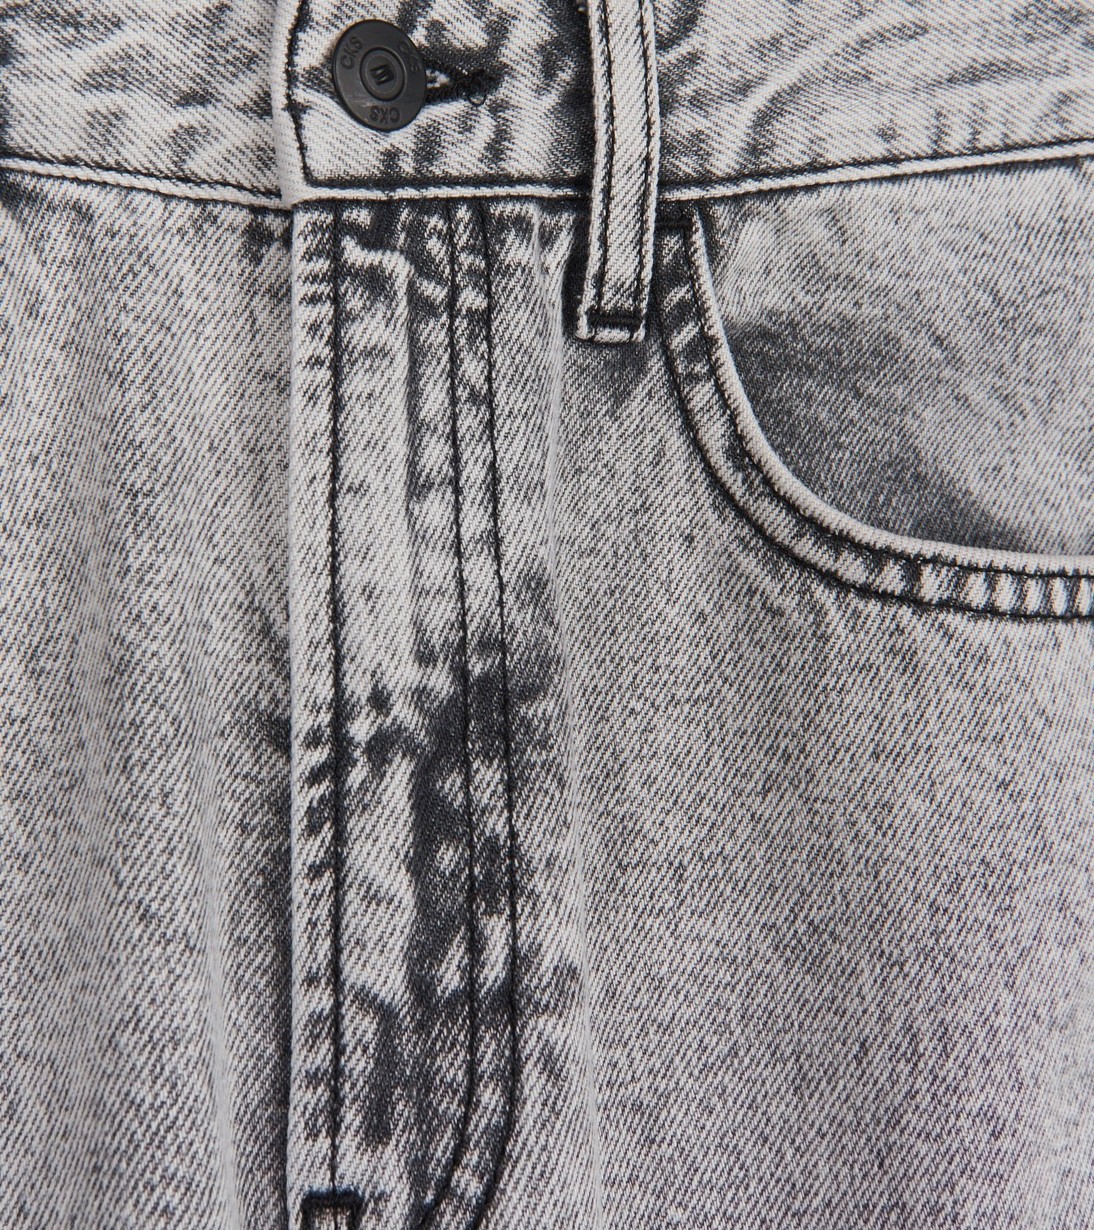 CKS Dames - WILLOW - enkel jeans - grijs